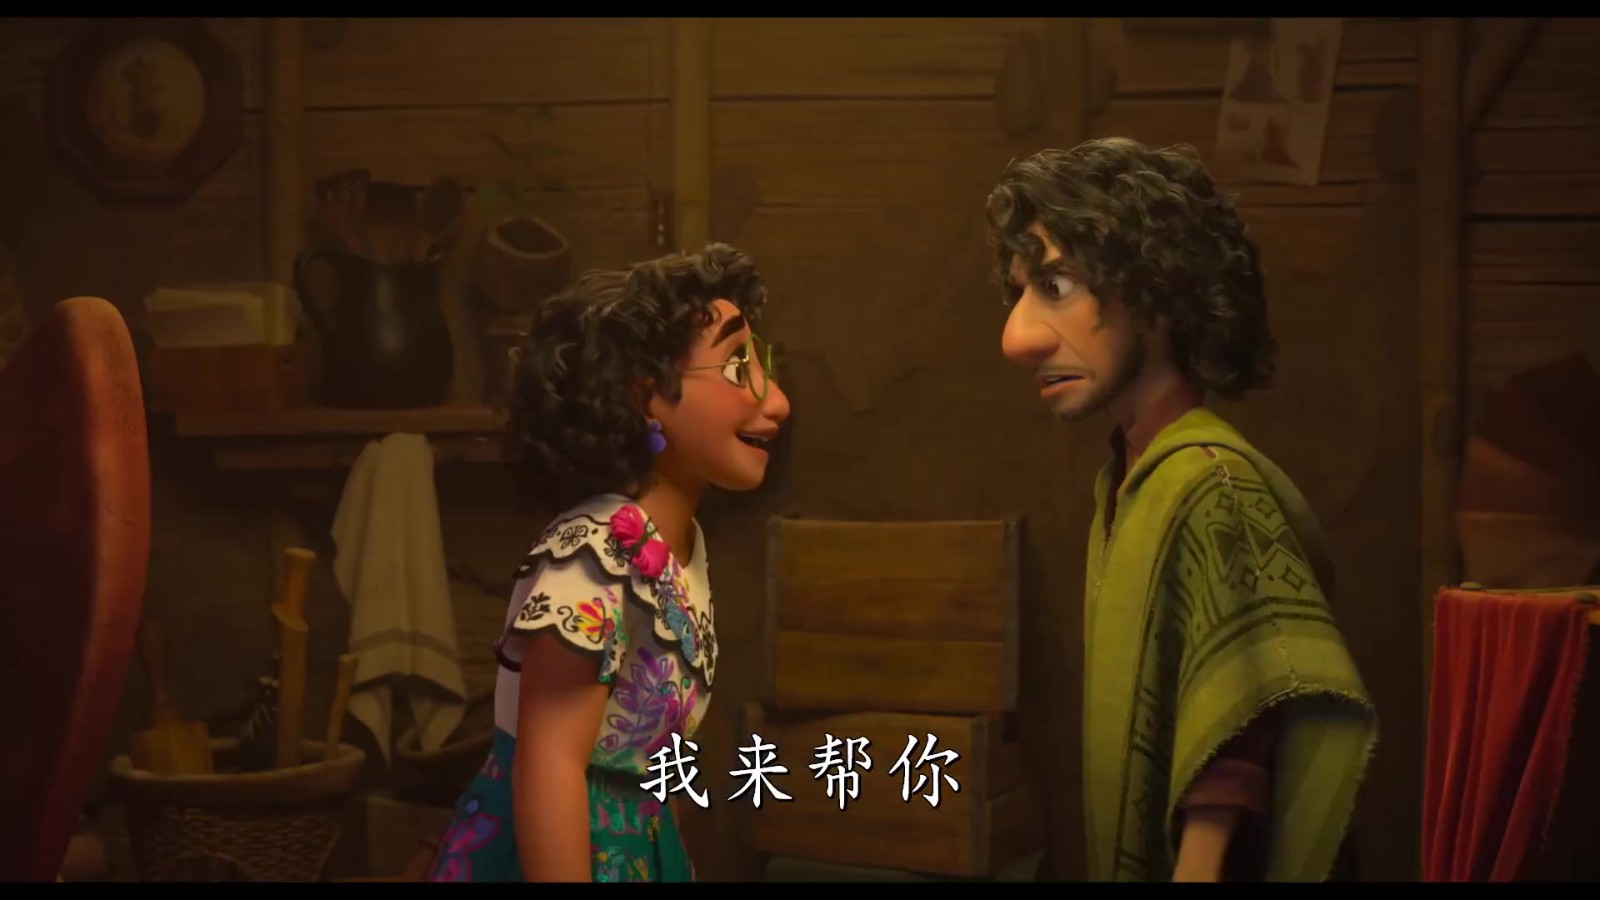 迪士尼原创动画《魔法满屋》全新中文预告公开